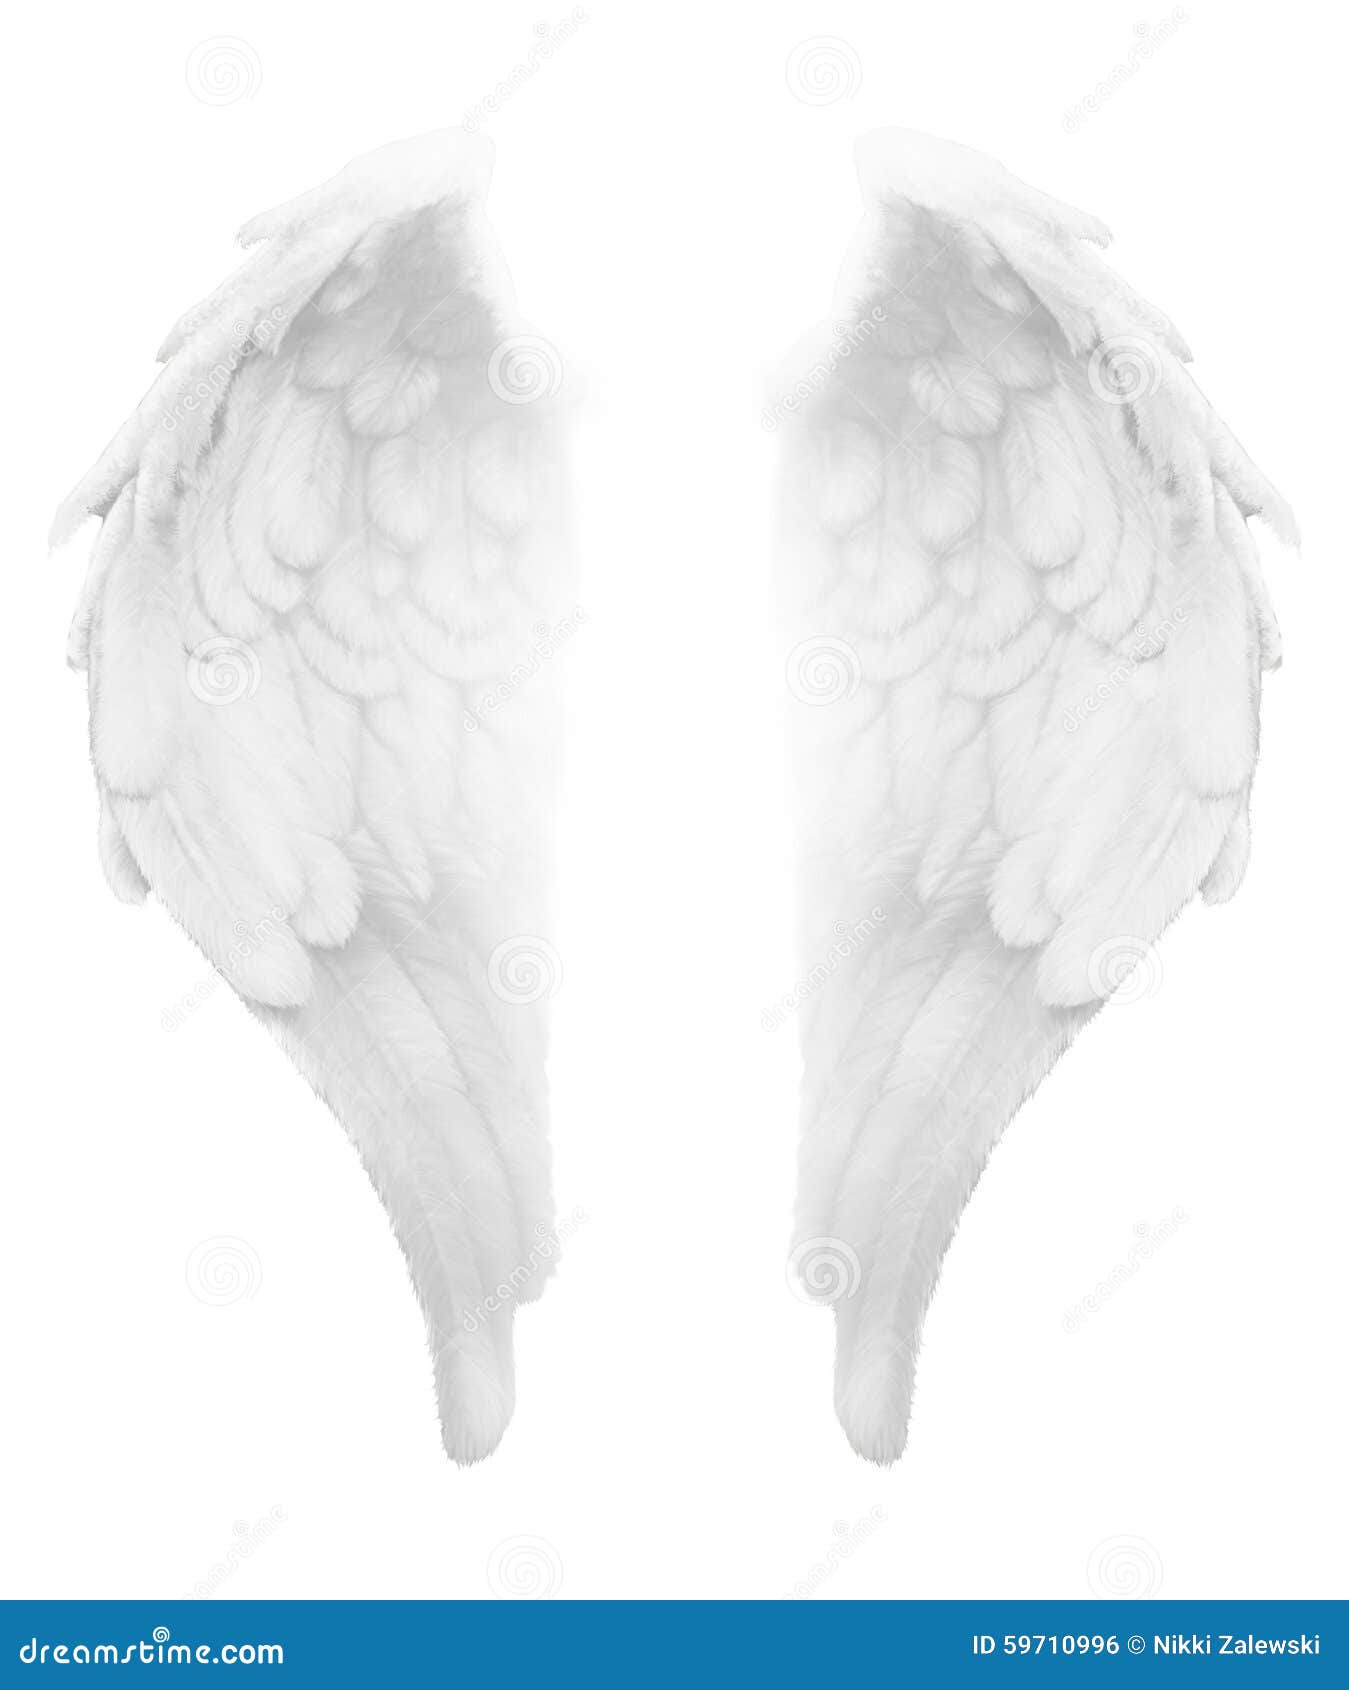 divine light white angel wings